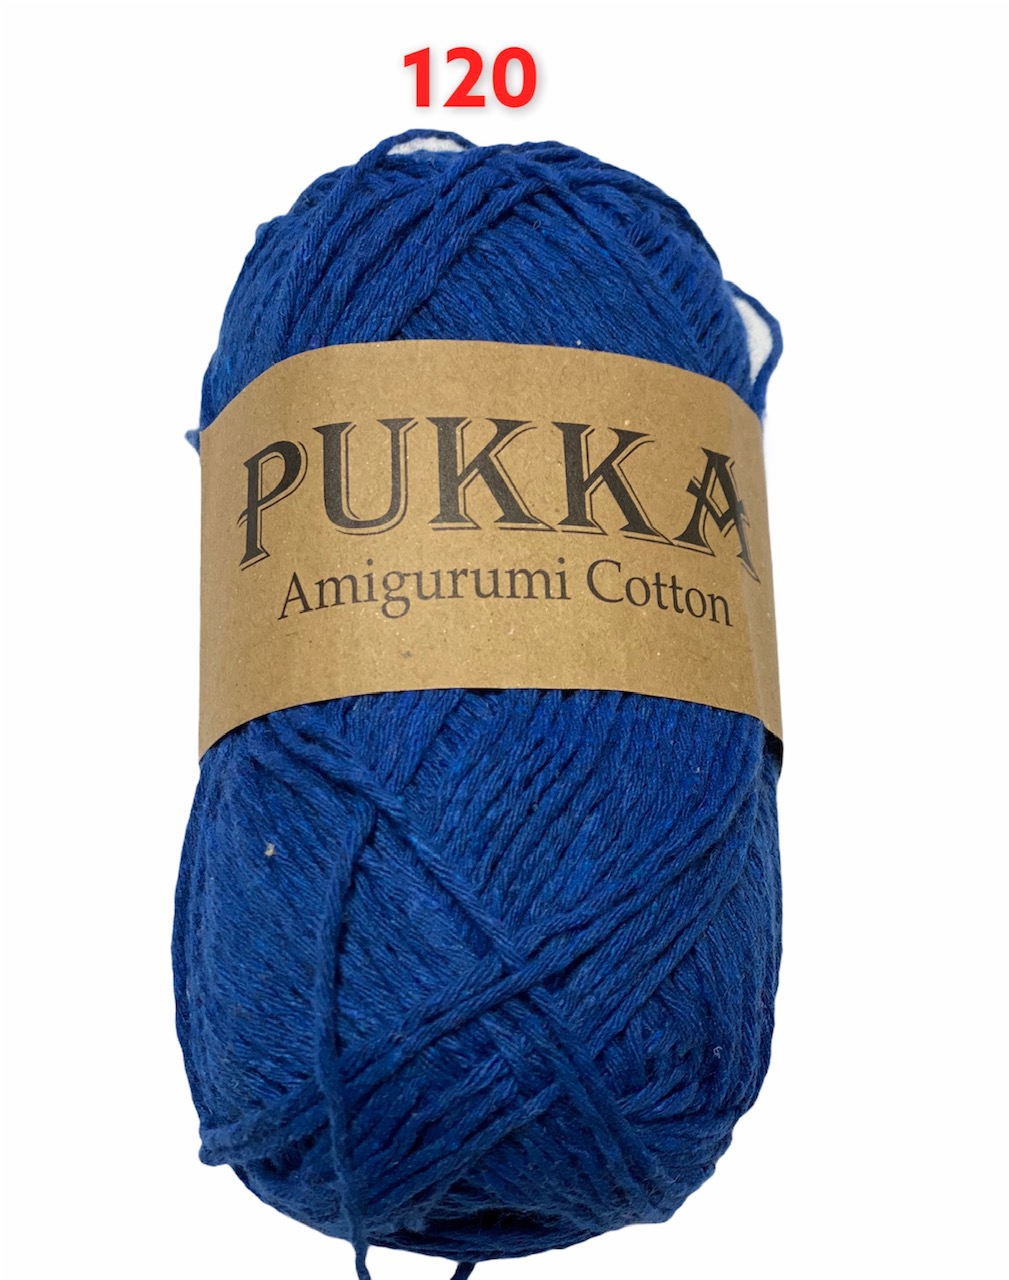 PUKKA Amigurumi Cotton 100g,120